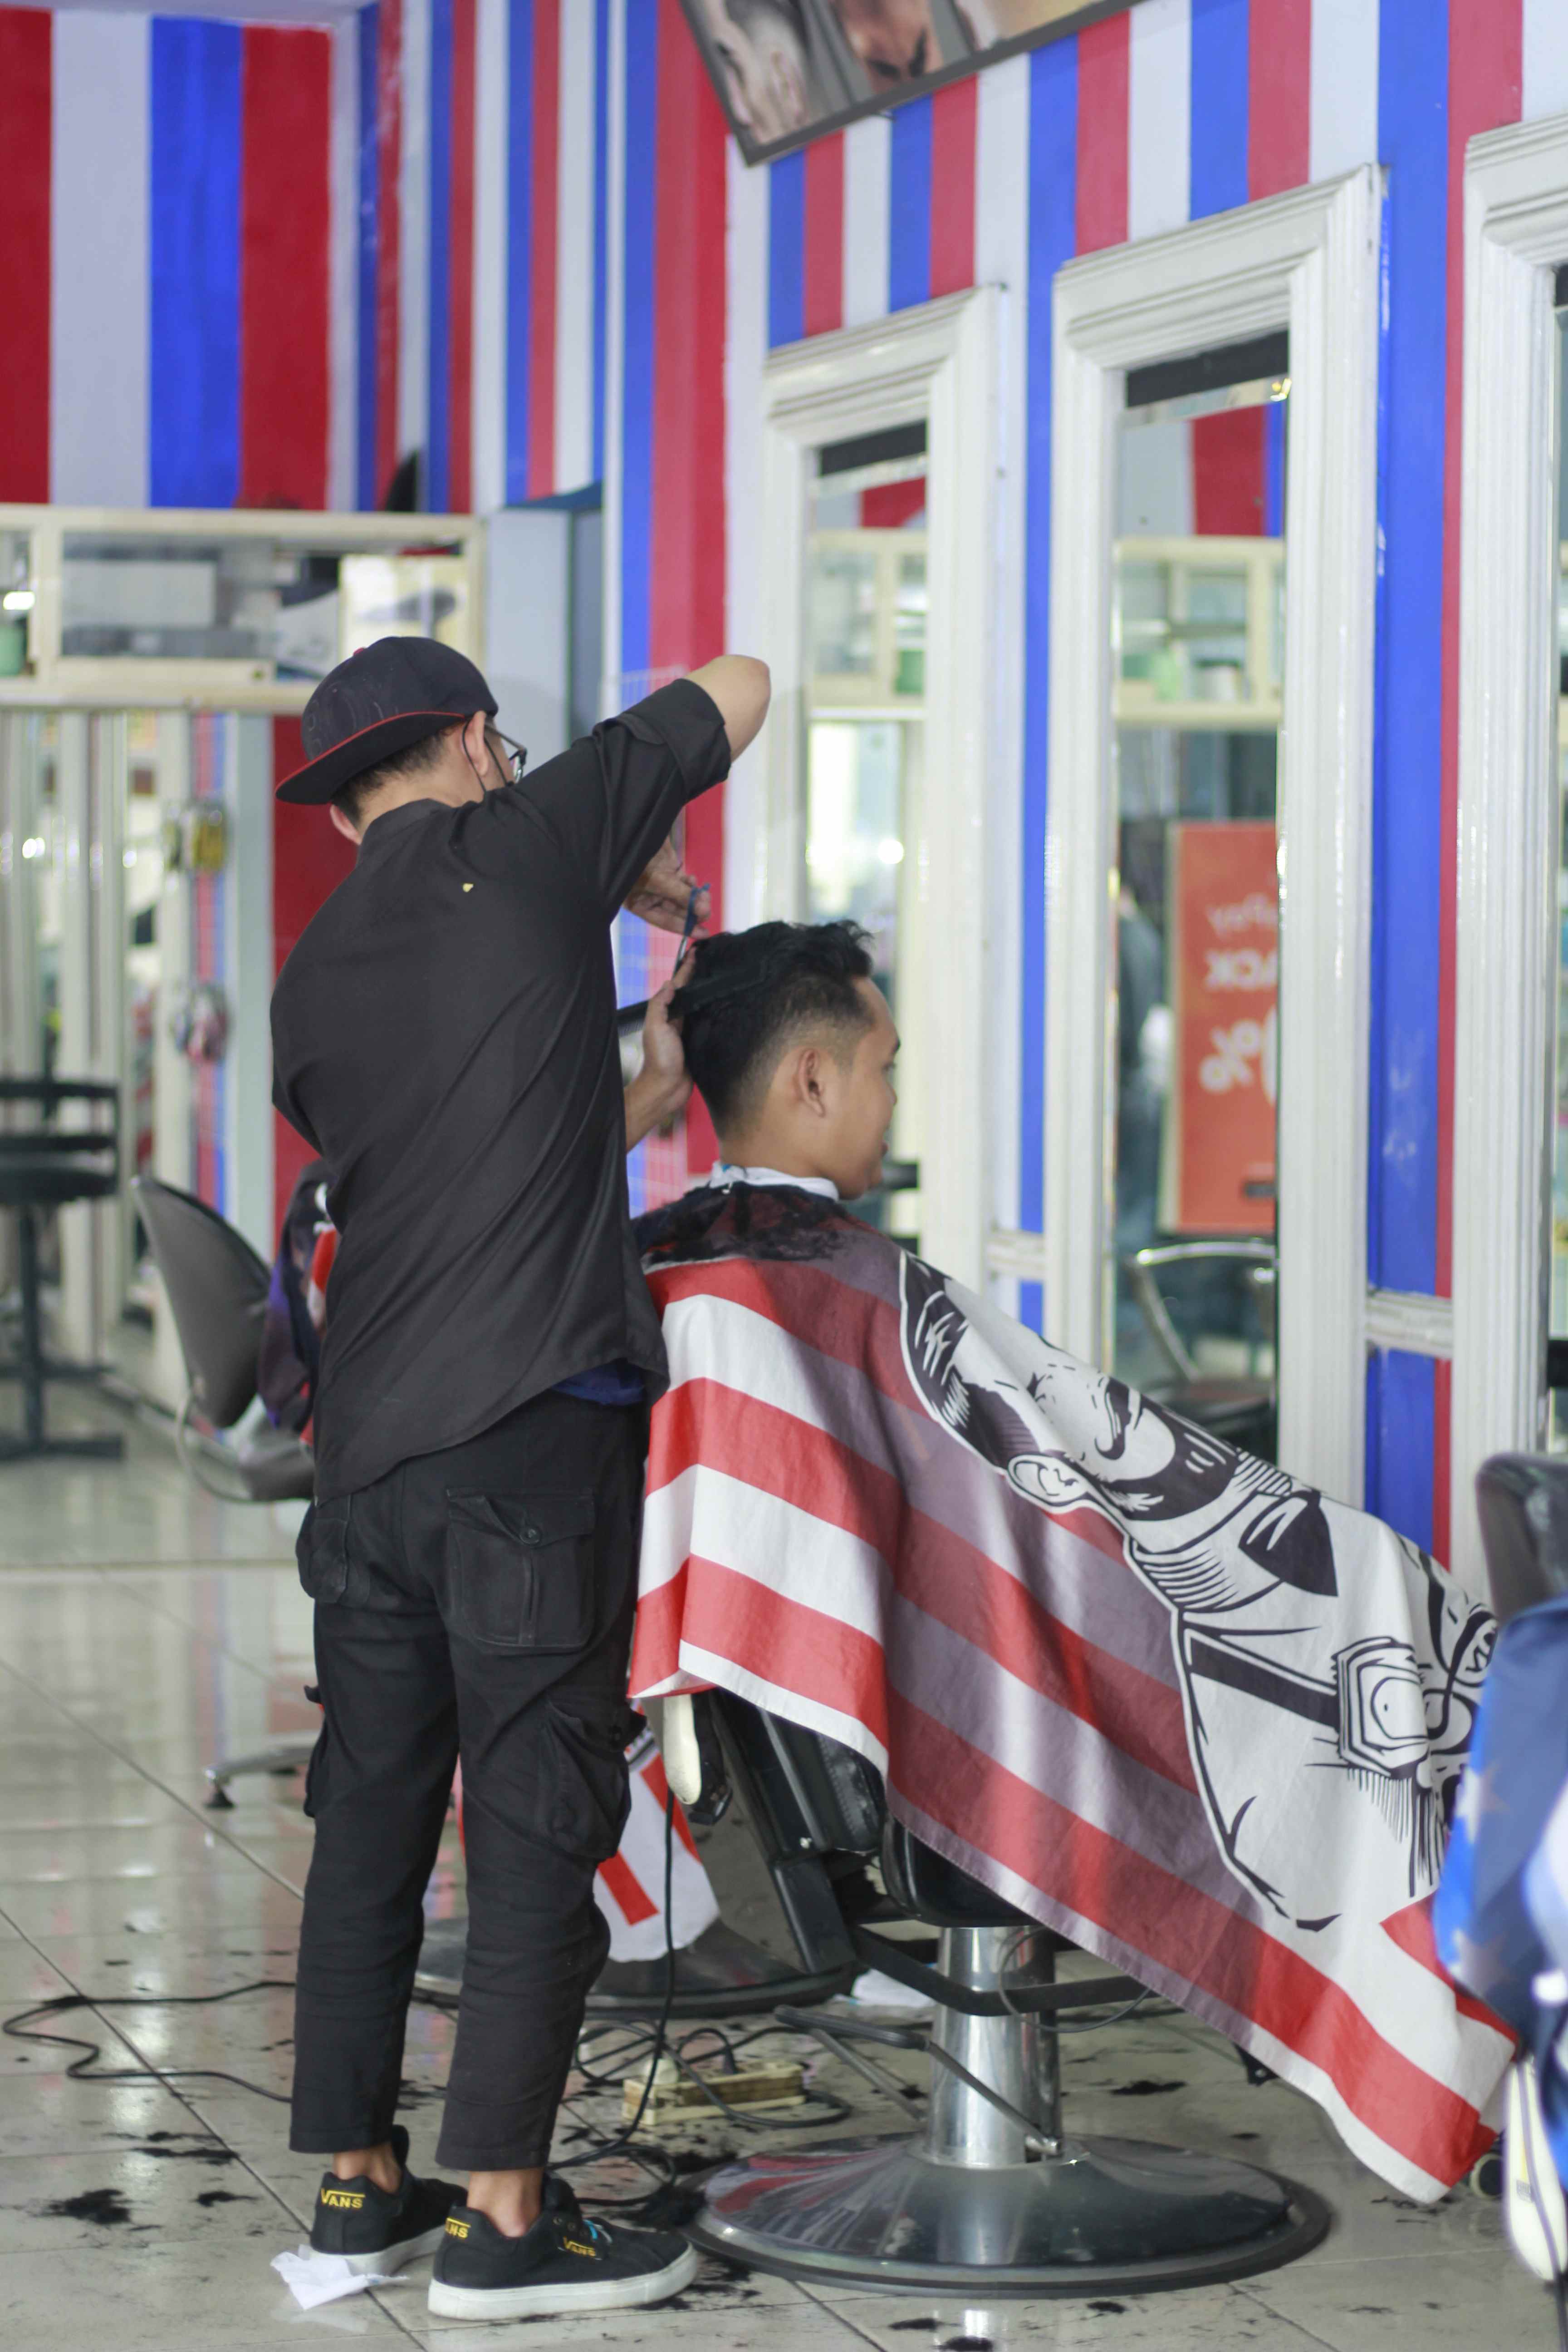 Lokasi Tempat Cukur Rambut Di Kelurahan Bandulan Profesional